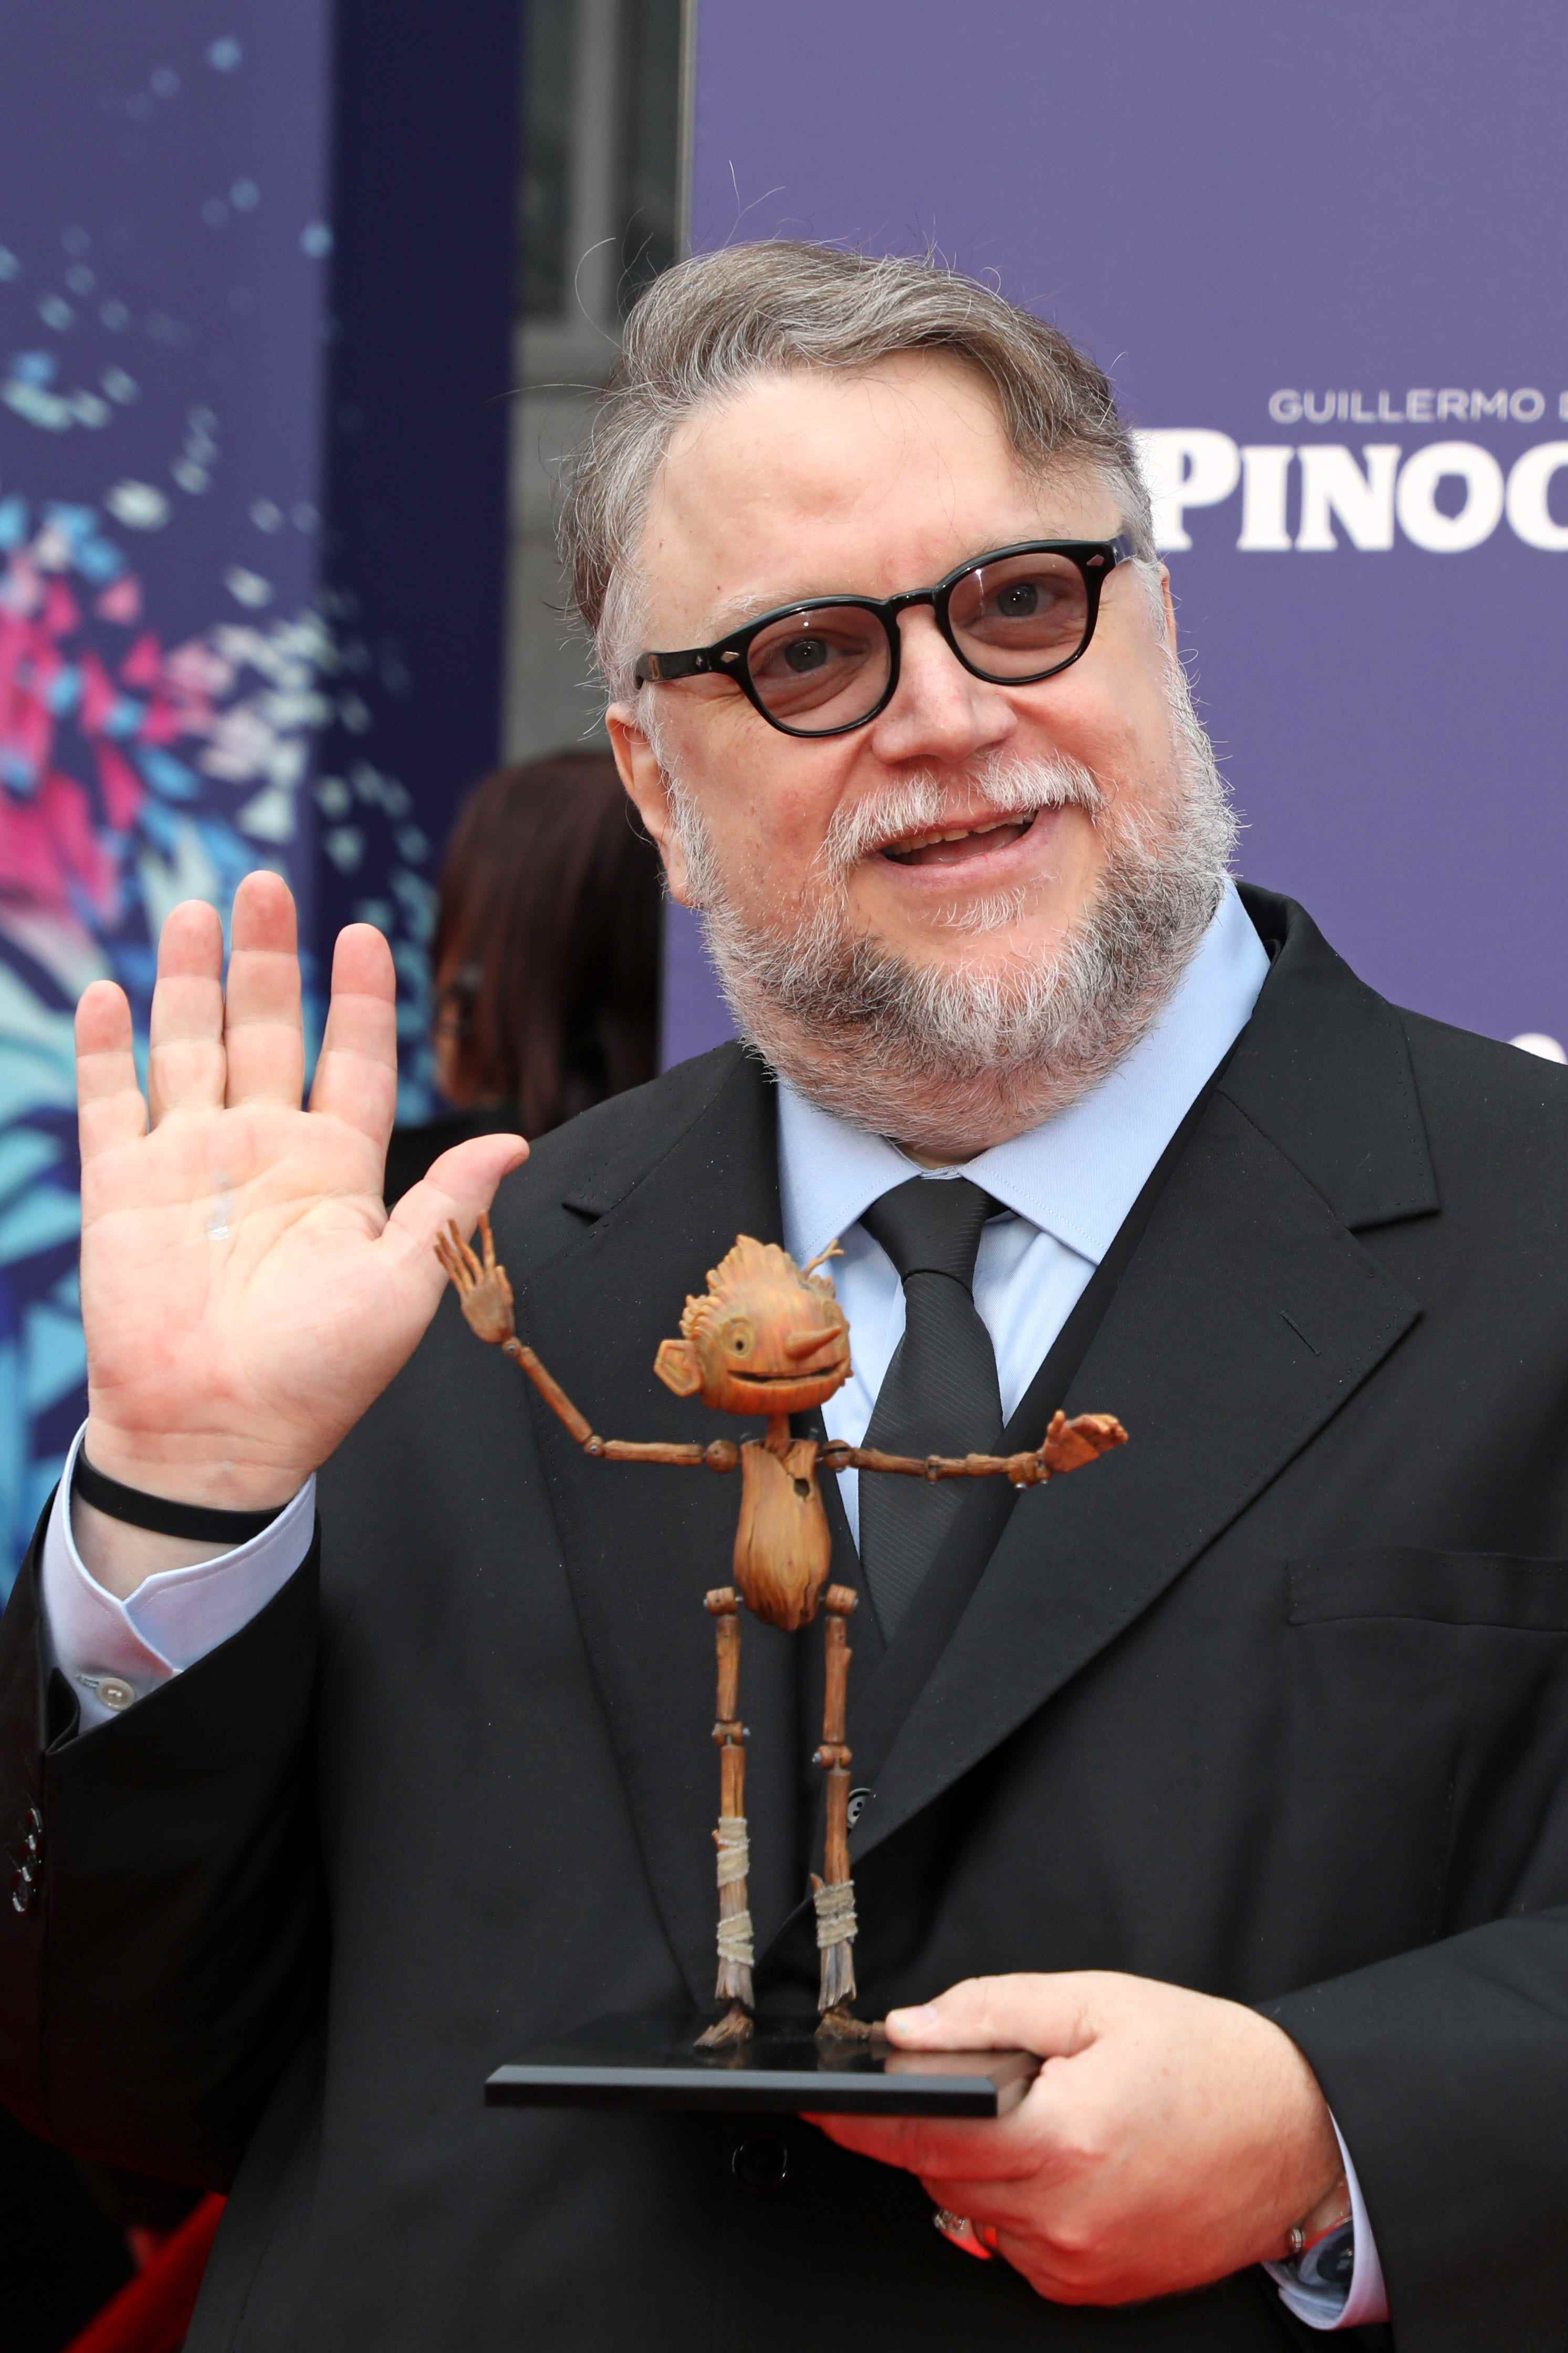 Regisseur Guillermo del Toro posiert mit einer kleinen Nachbildung von Pinocchio während der Weltpremiere von „Guillermo Del Toros Pinocchio“ während des London Film Festivals am 15. Oktober 2022 in London, England.